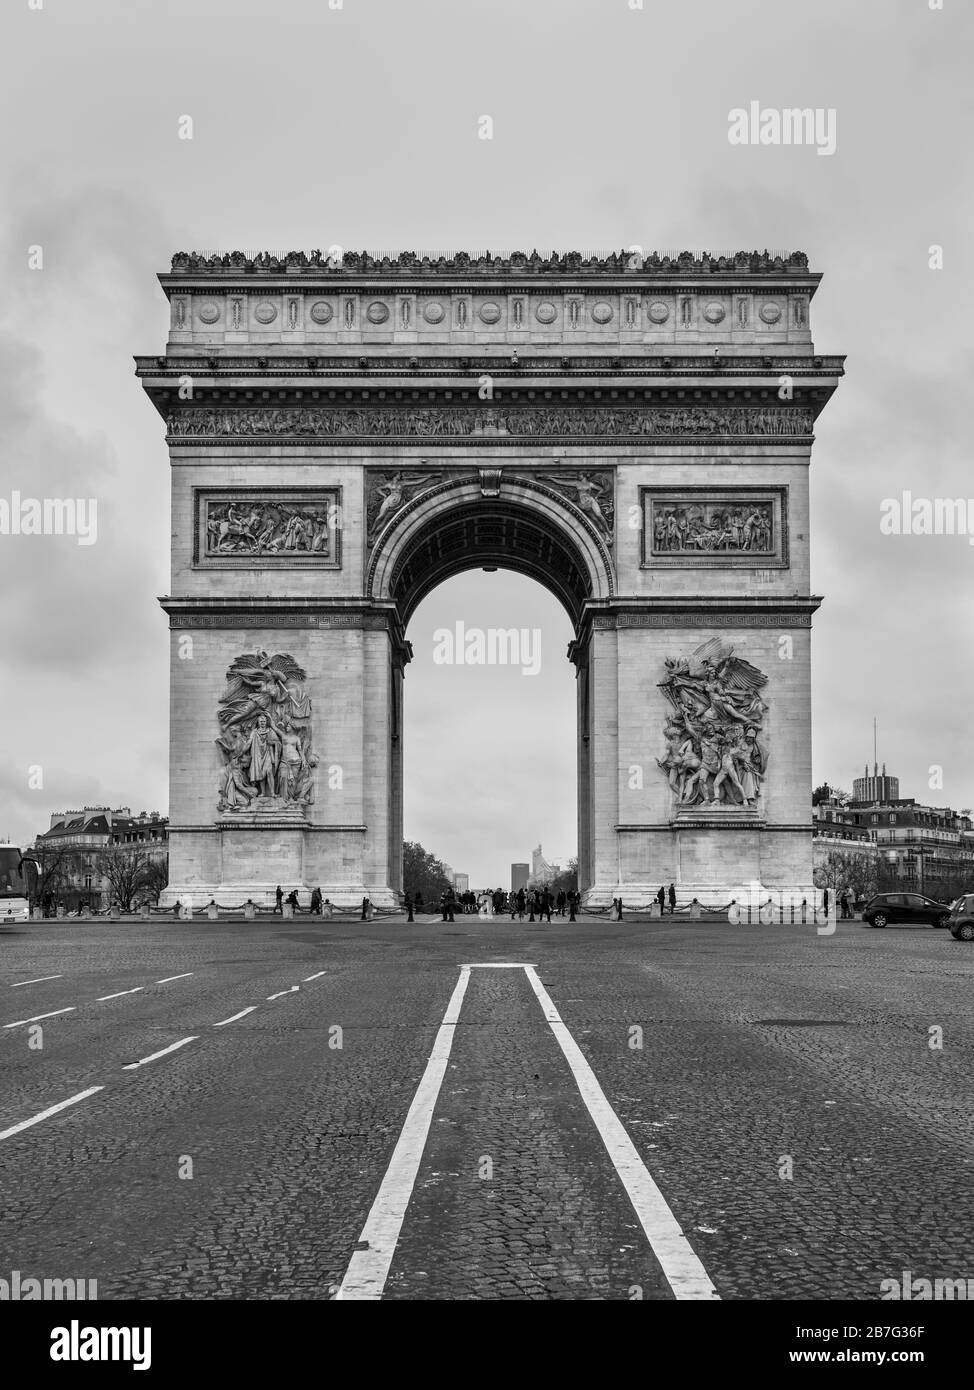 Paris, France - 23 décembre 2018 : Arche triomphale à Paris, noir et blanc, vue monochrome. Architecture et monuments de Paris. Banque D'Images